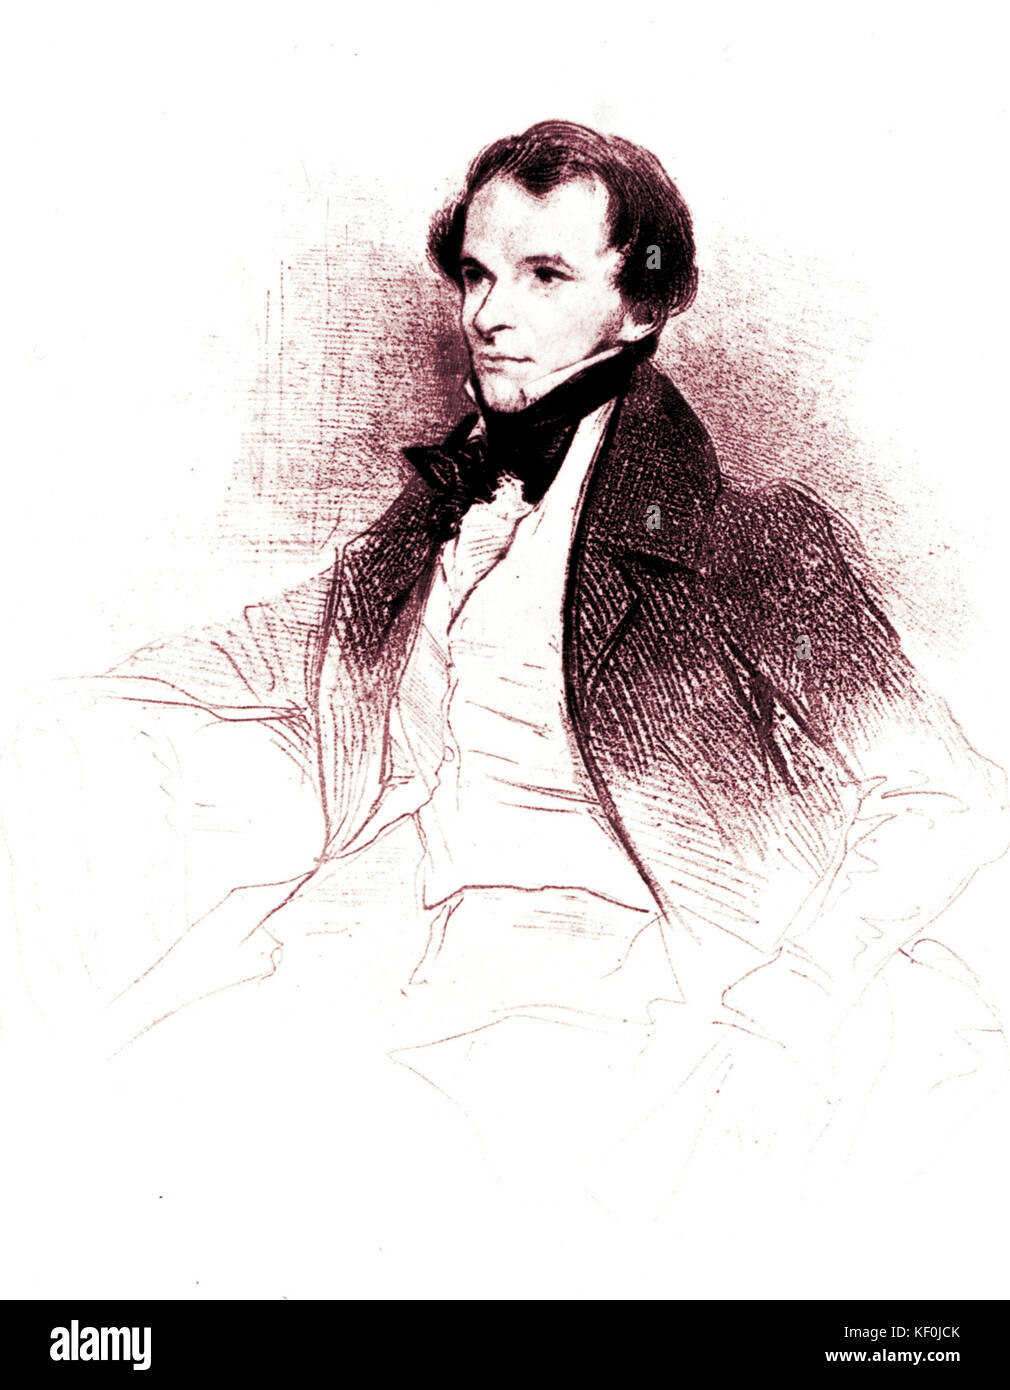 Prosper Merimee by Deveria, 1829. French novelist, dramatist, archaeologist and historian, worte CARMEN. 28 September 1803– 23 September 1870 Stock Photo